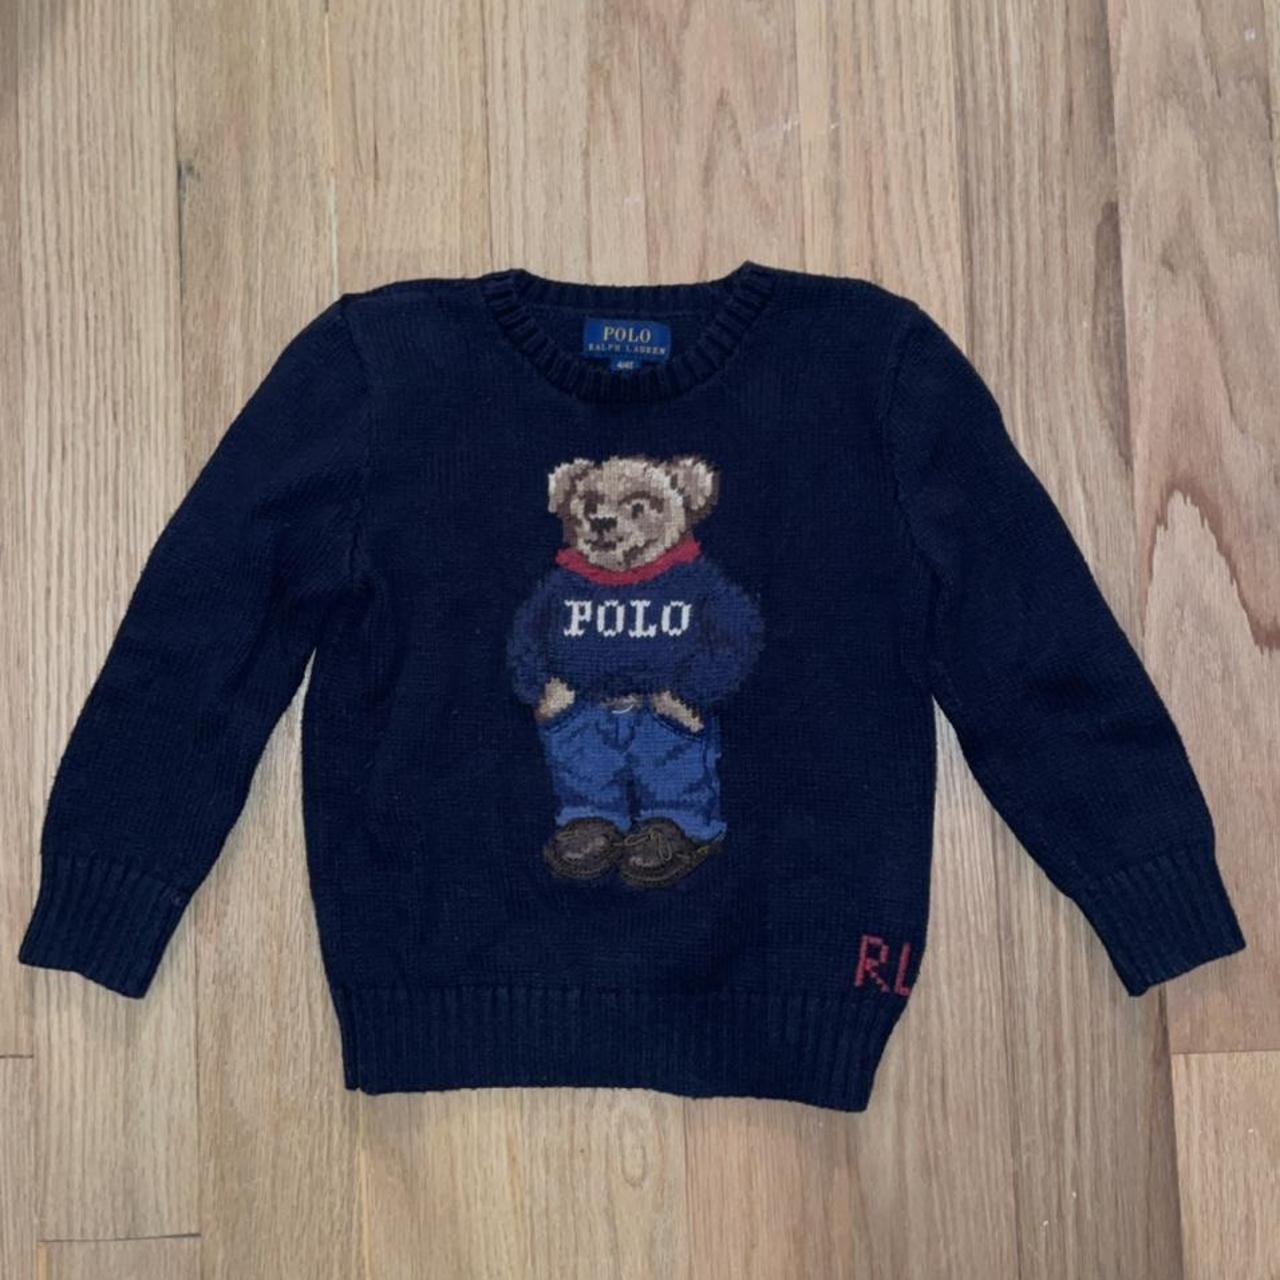 Polo bear-sweater - Depop